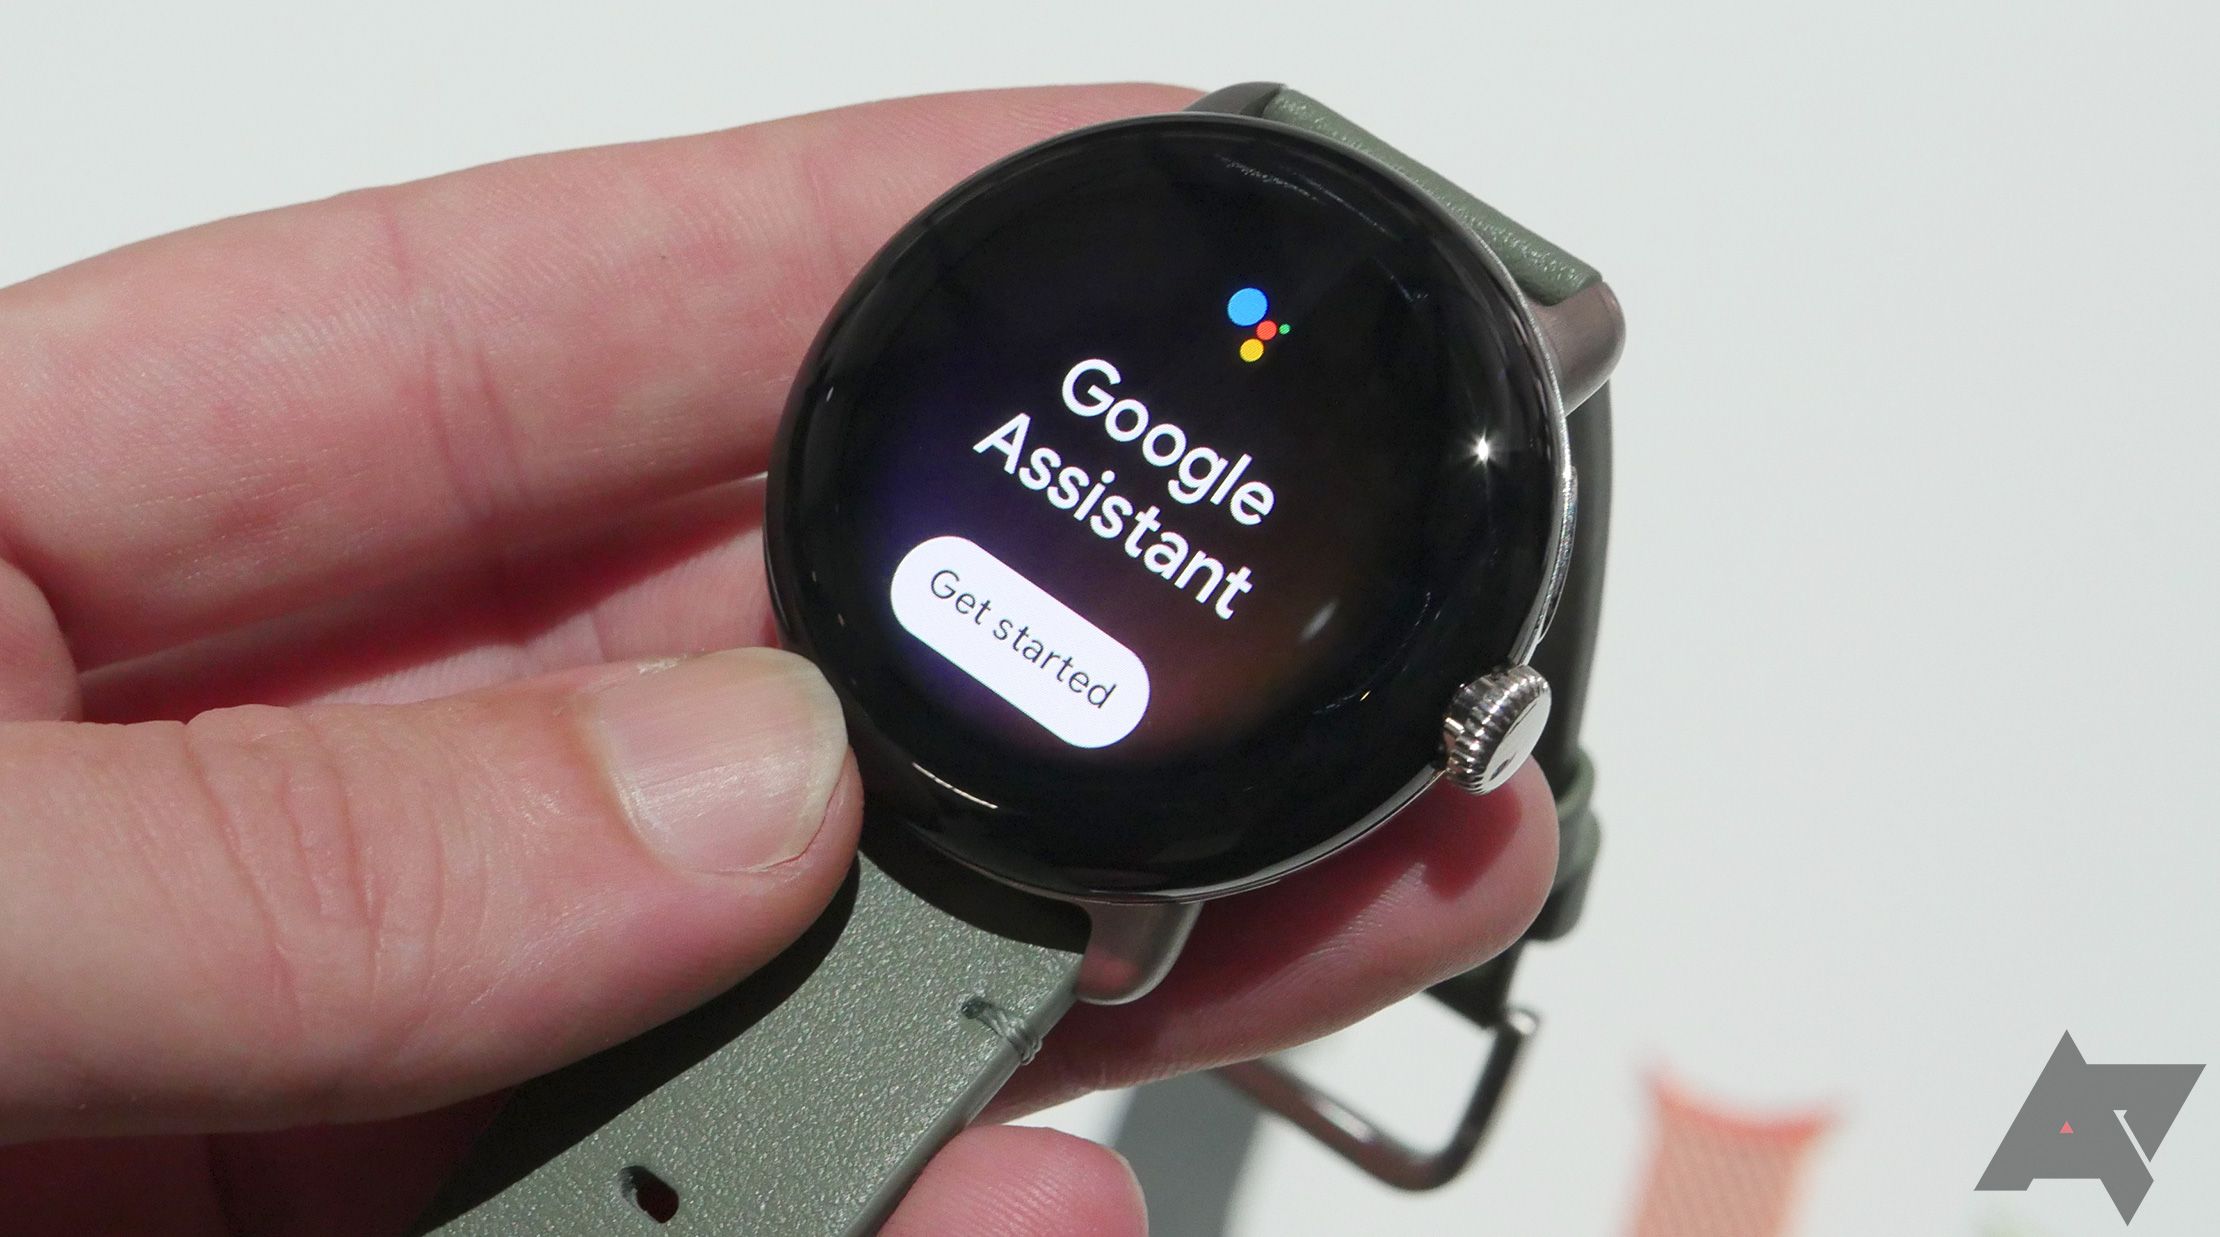 Uma mão segurando um relógio Google Pixel mostrando o Google Assistente